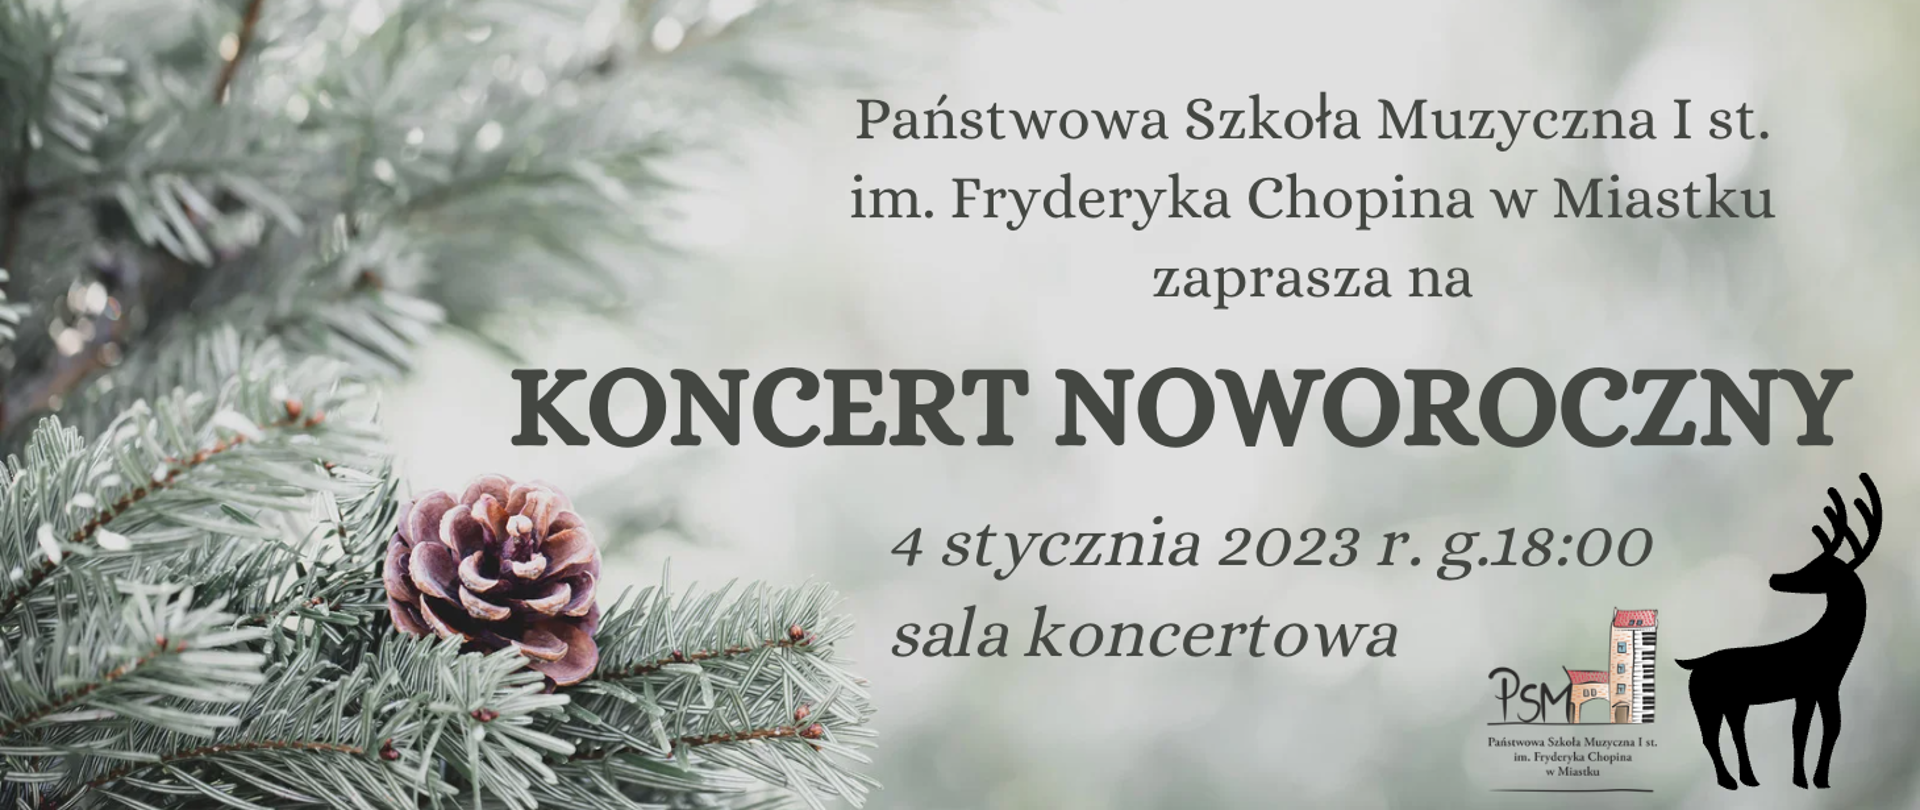 Grafika przedstawiająca motyw zimowy, informująca o koncercie noworocznym 4 stycznia 2023 r. w sali koncertowej Państwowej Szkoły Muzycznej I st. im. Fryderyka Chopina w Miastku. 